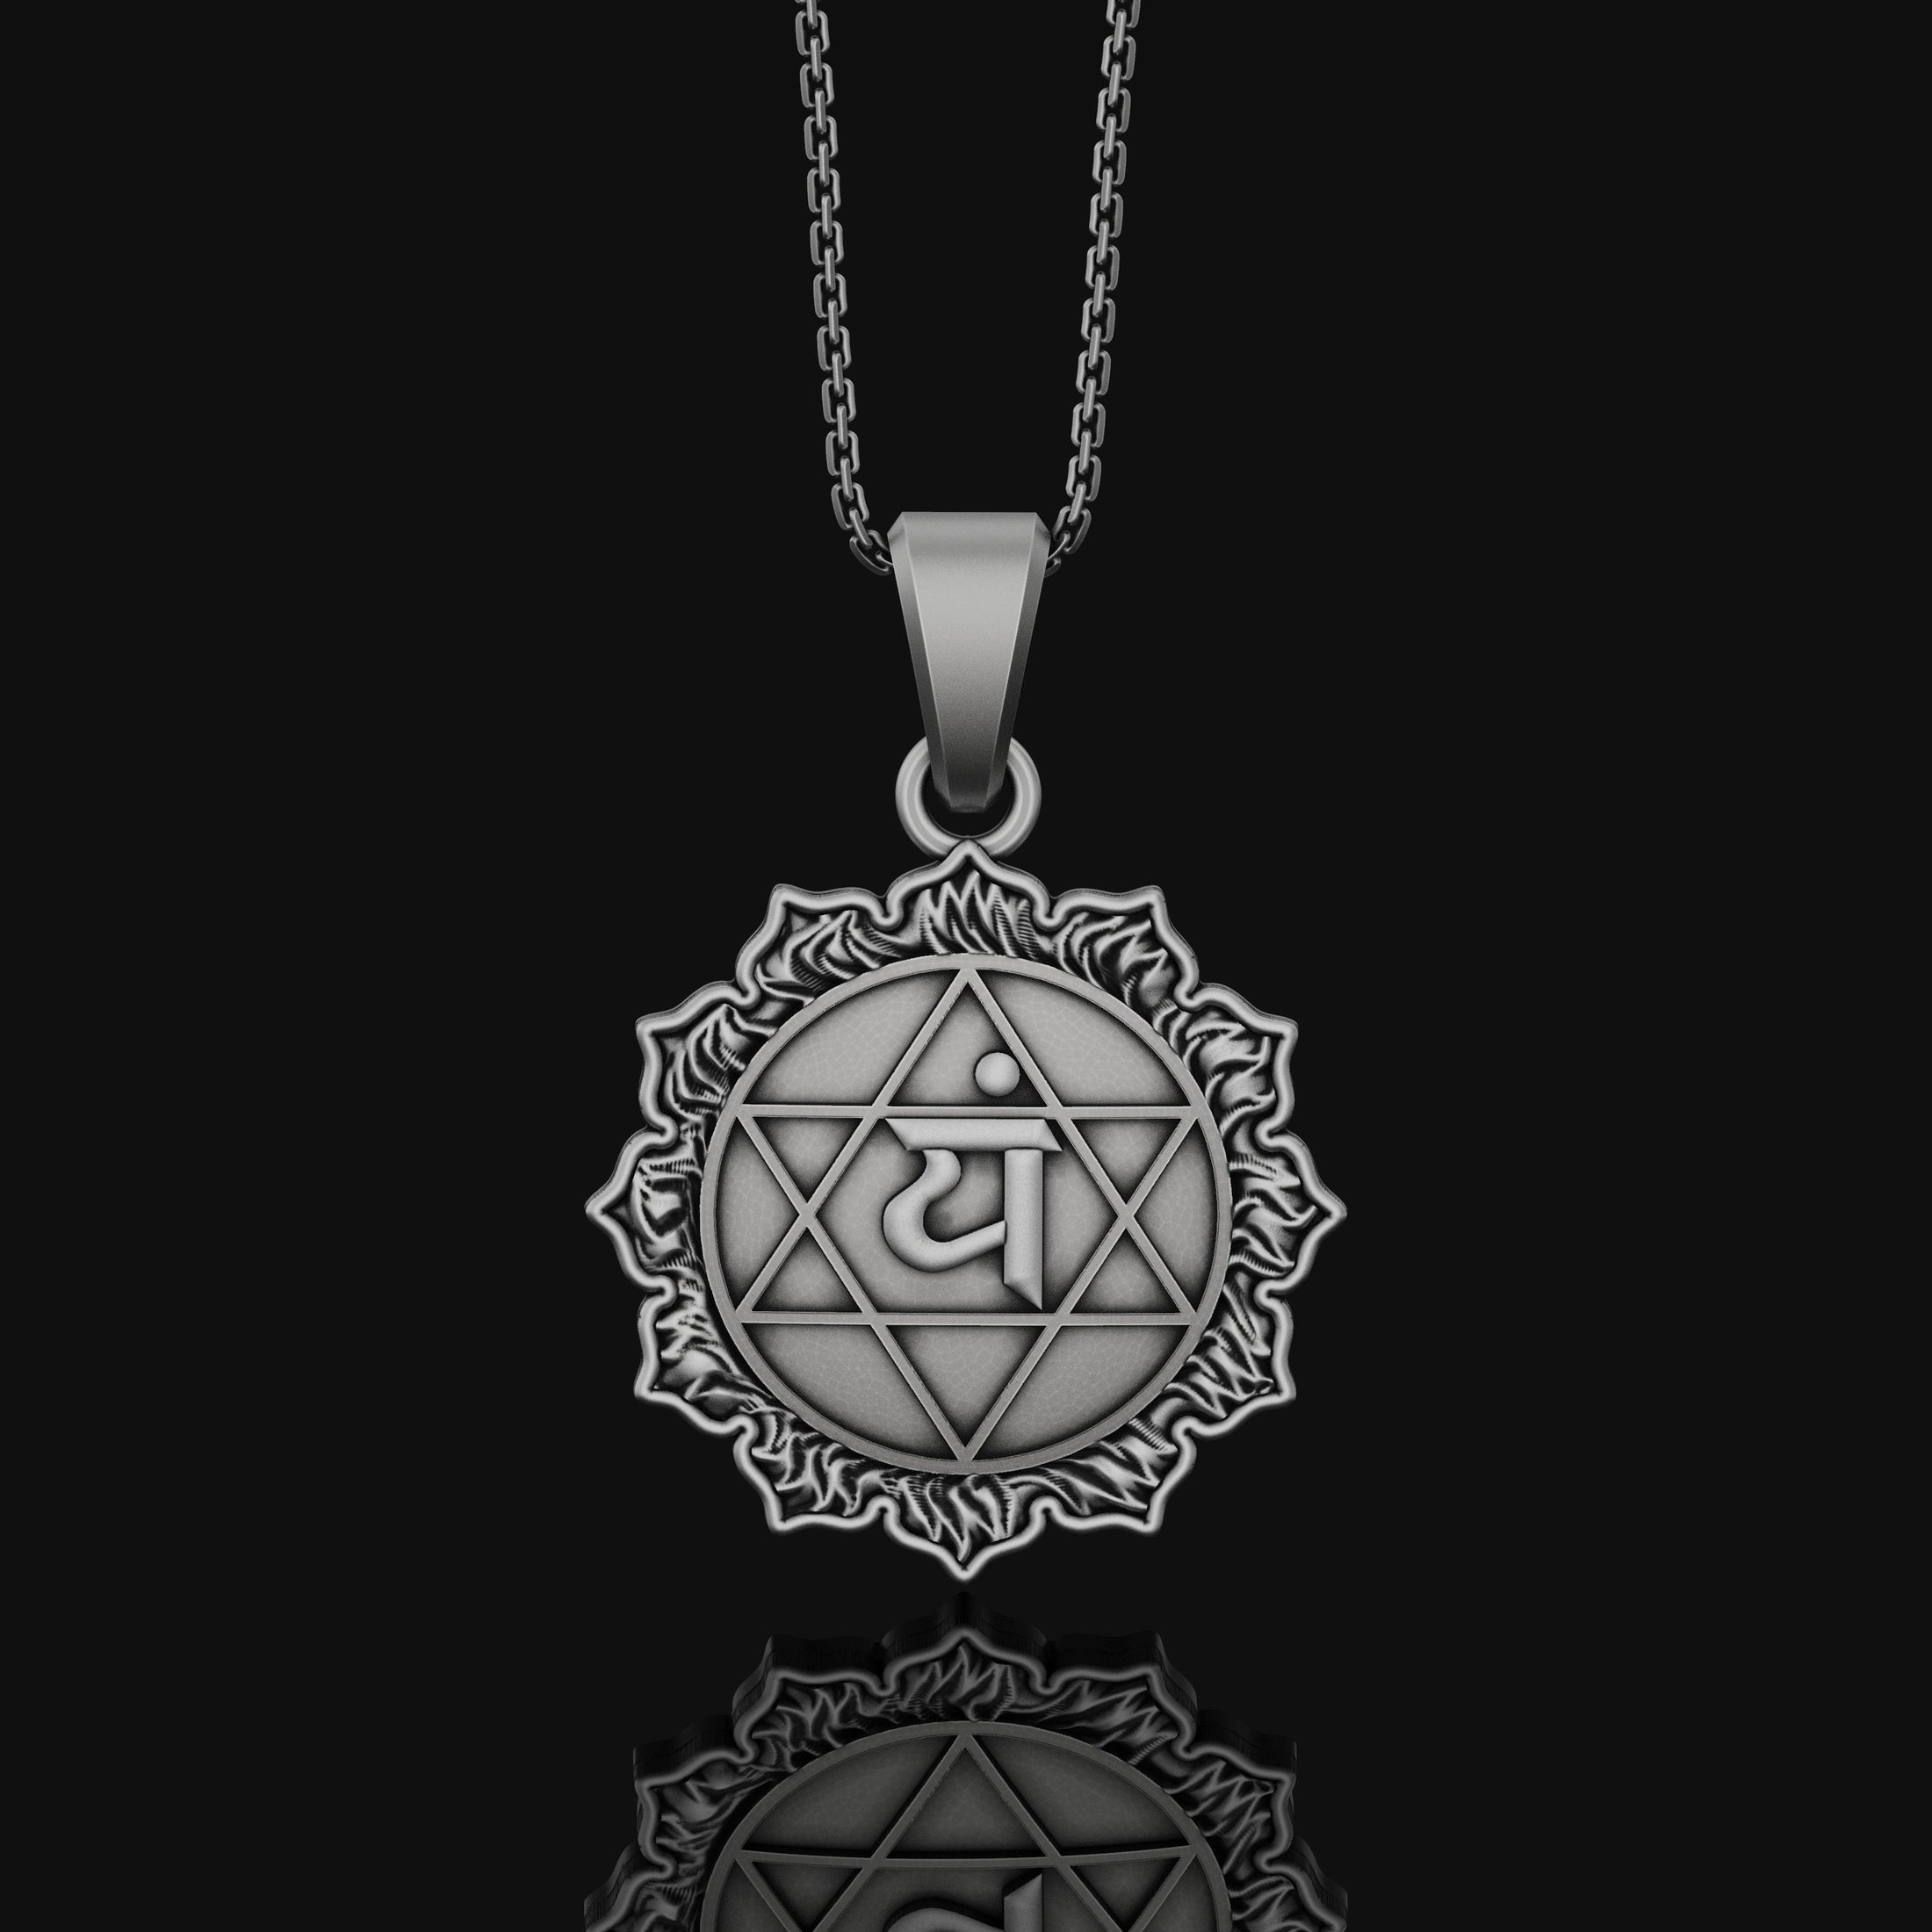 Anahata Chakra Necklace, Heart Chakra Pendant, Anahata, Chakra, Yoga Necklace, Yoga Jewelry, Spiritual Jewelry, Sterling Silver Oxidized Finish